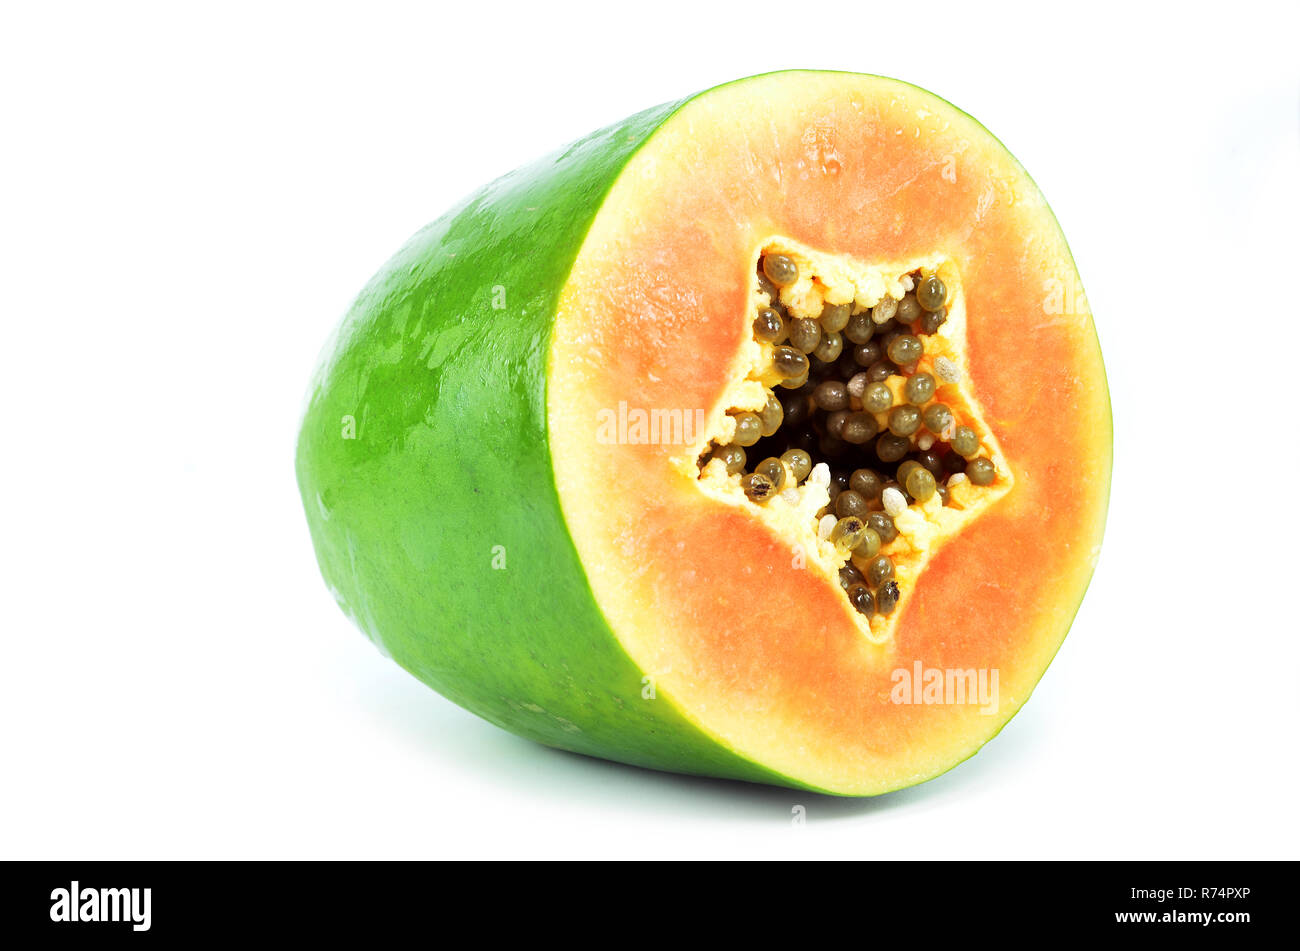 Green papaya isolated Stock Photo